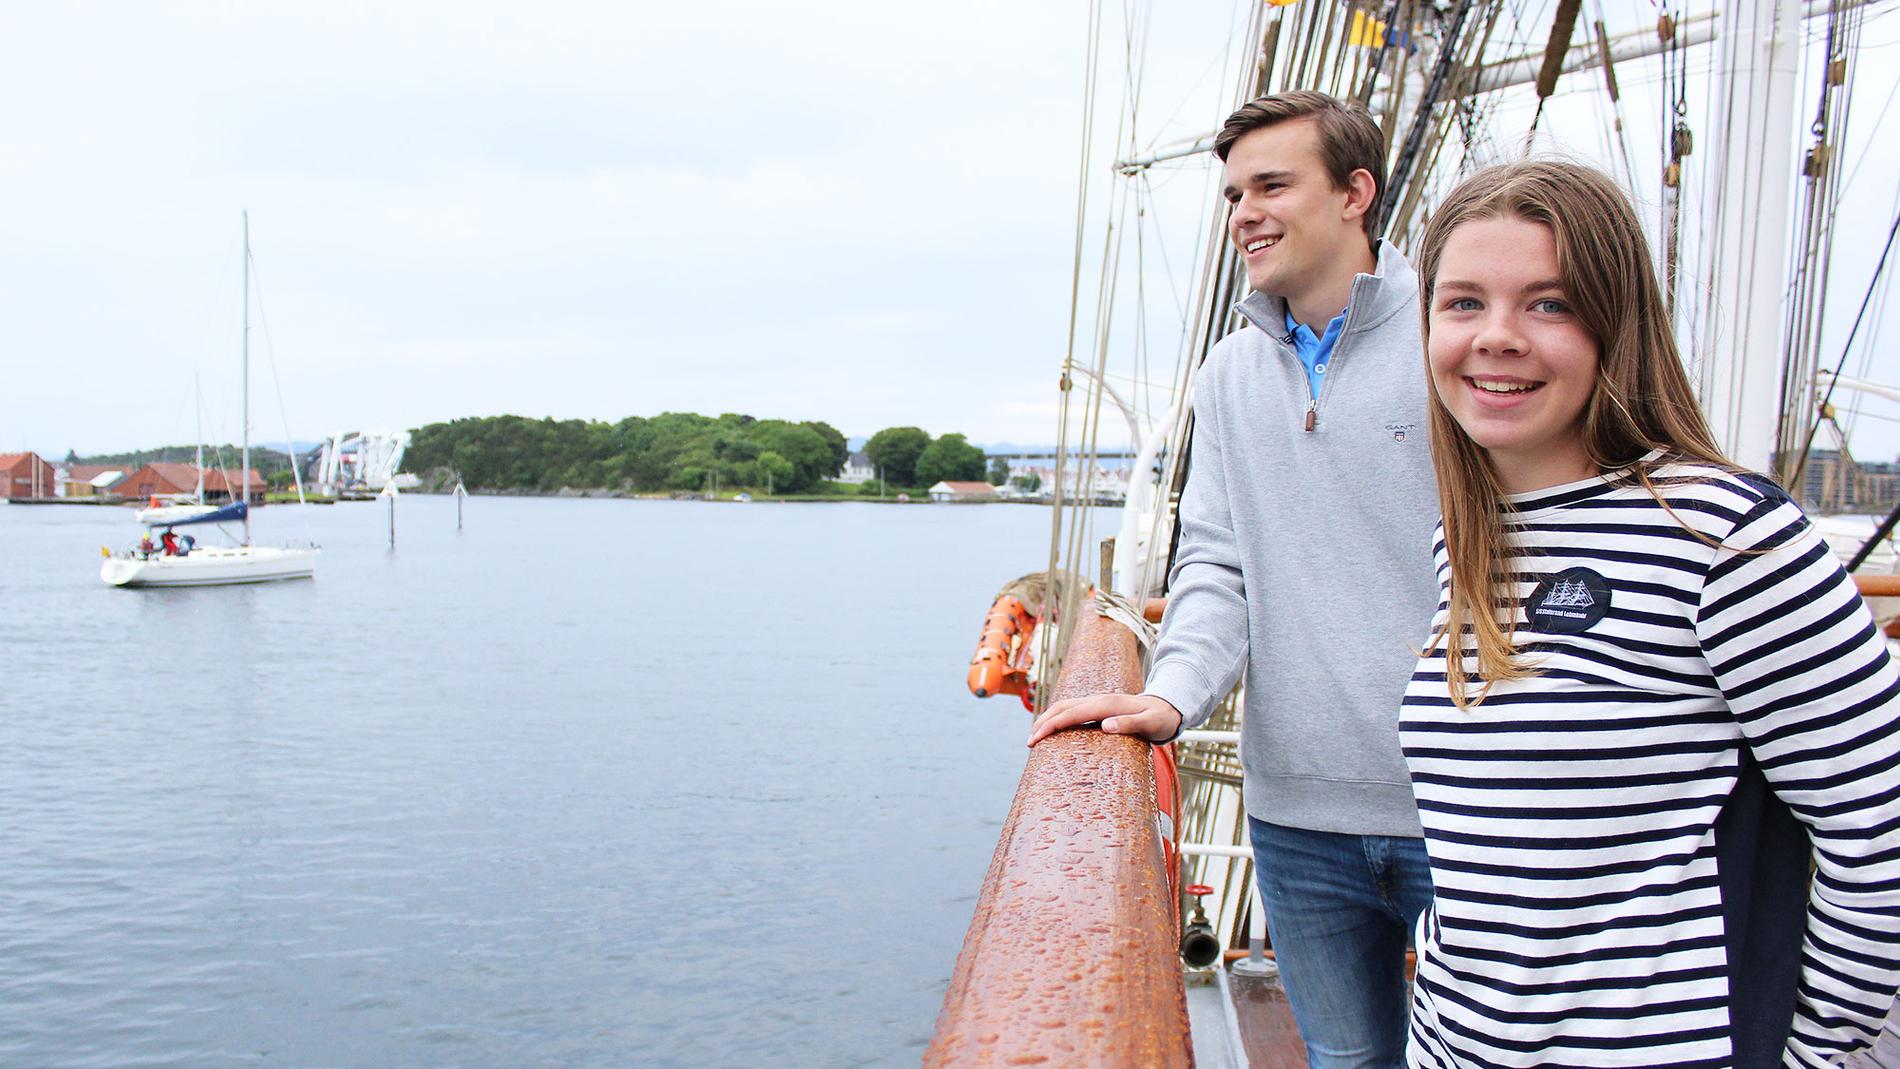  Fredrik Moracchioli Lura (17) og Astrid Røberg Ullenes (18) skal på «båtferie» i sommer. Men «båten» litt større enn den til venstre i bildet...